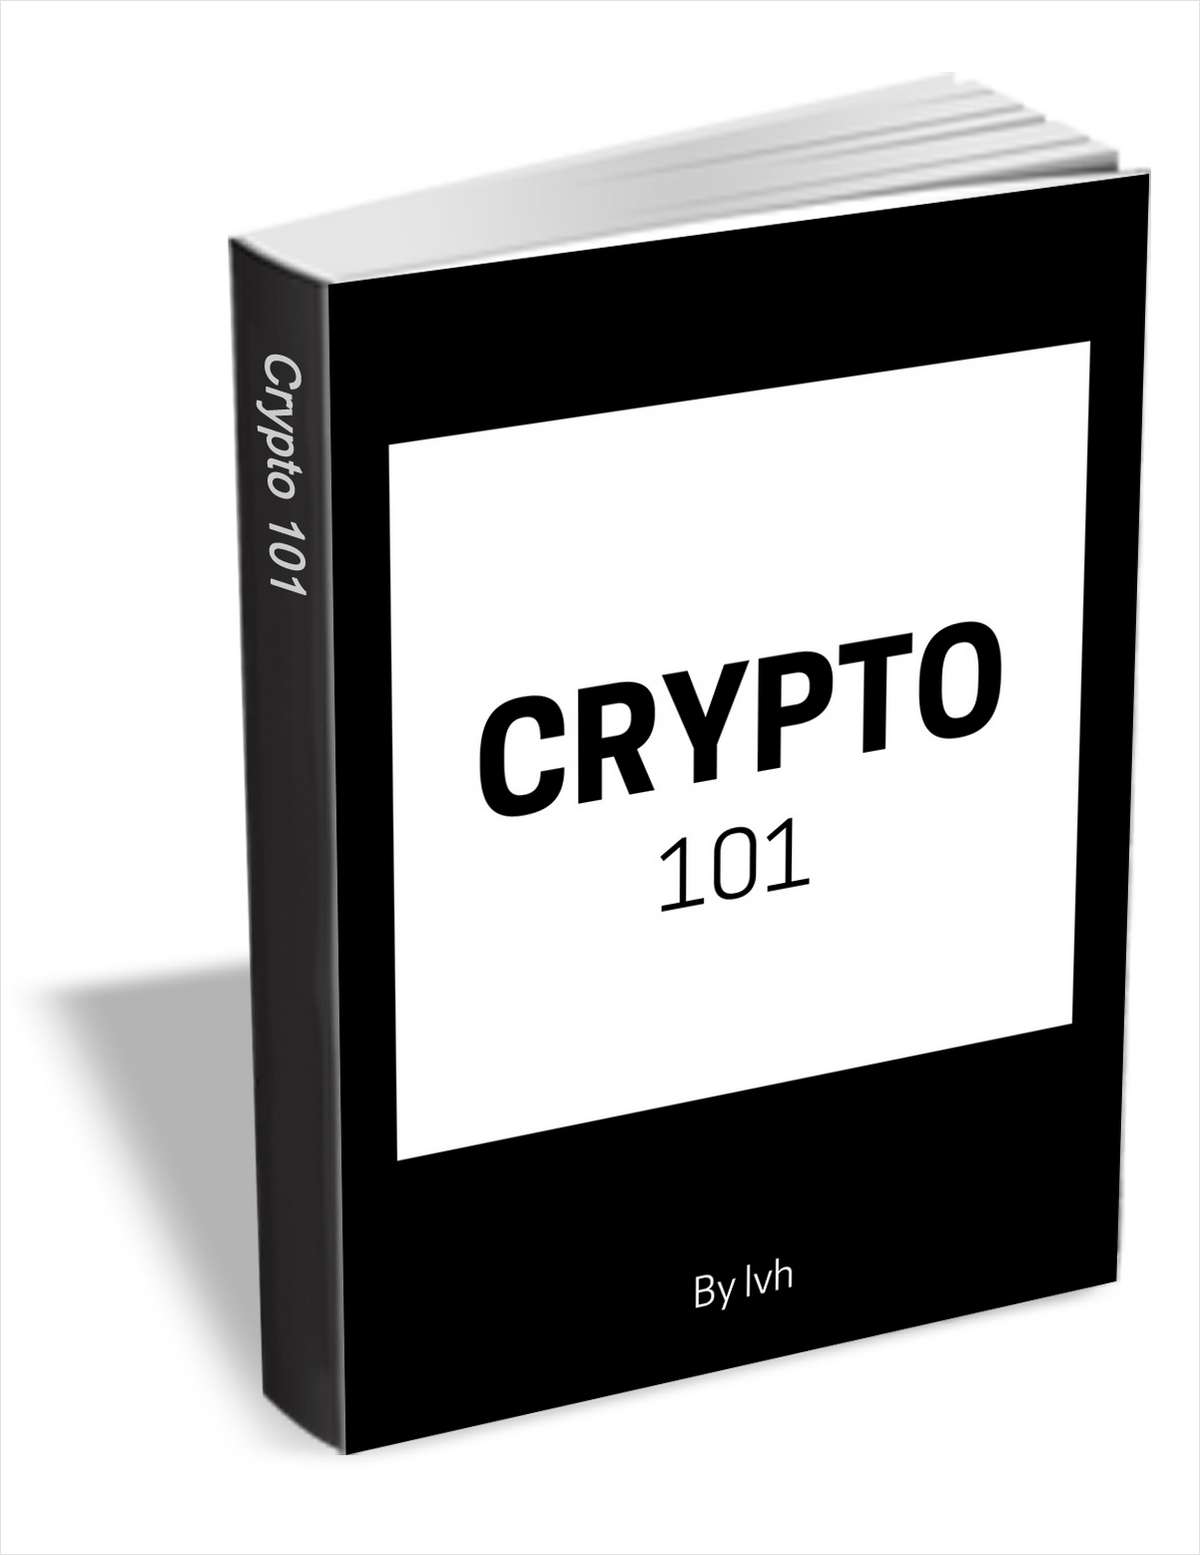 crypto 101 insider.com